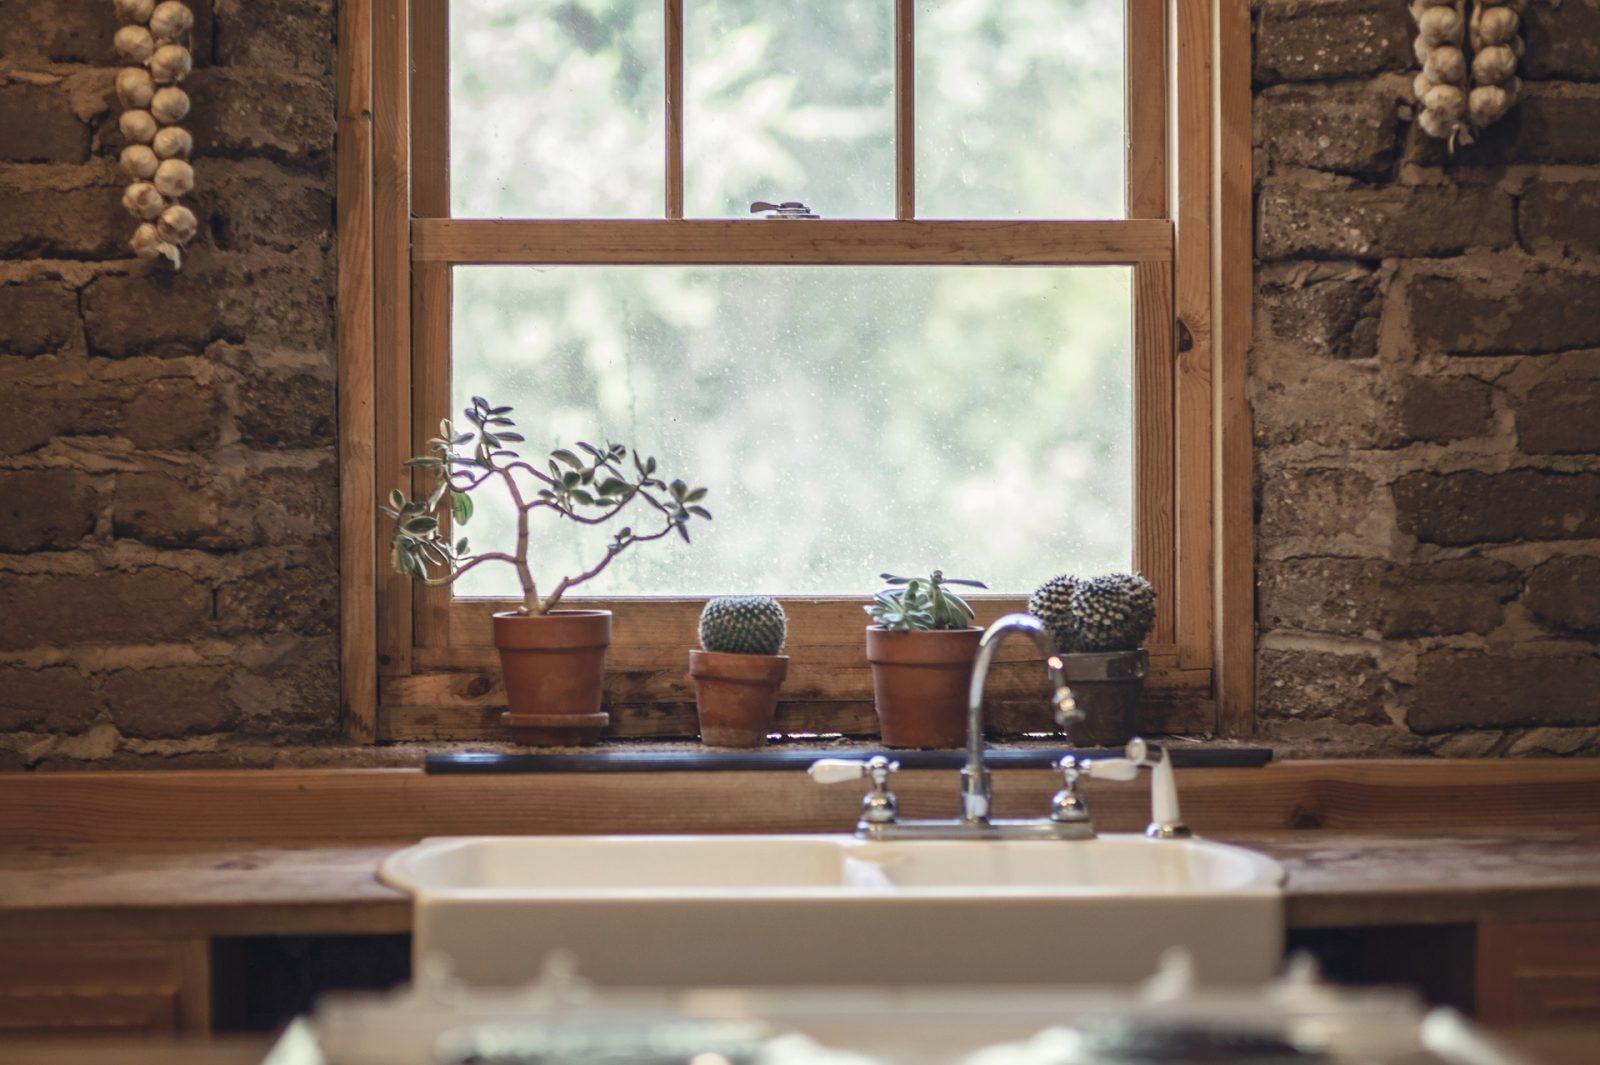 kitchen sink cactus window plants taps faucet